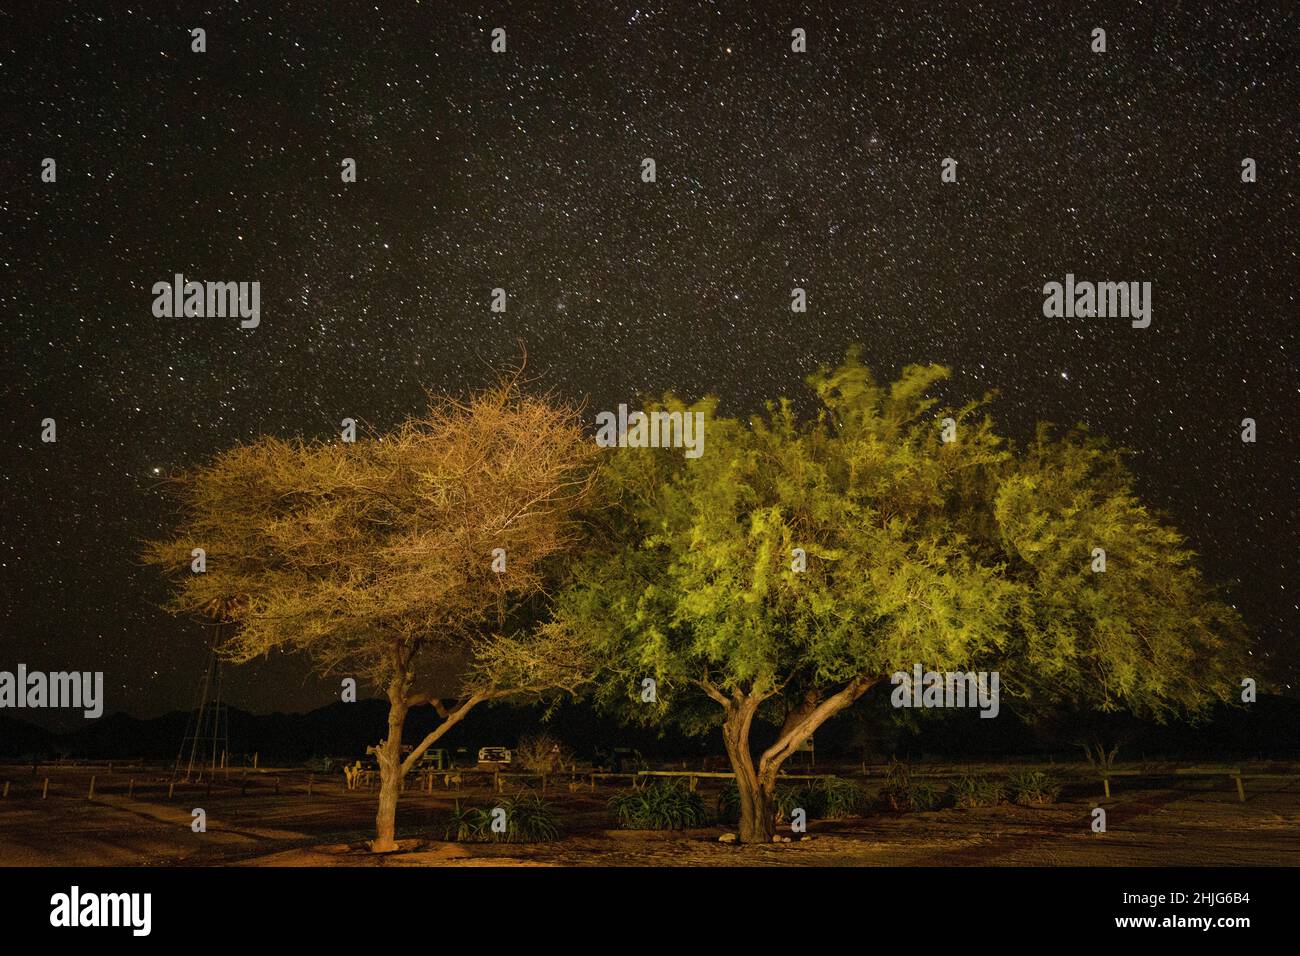 Notte stellata e alberi, Solitaire, Namibia Foto Stock